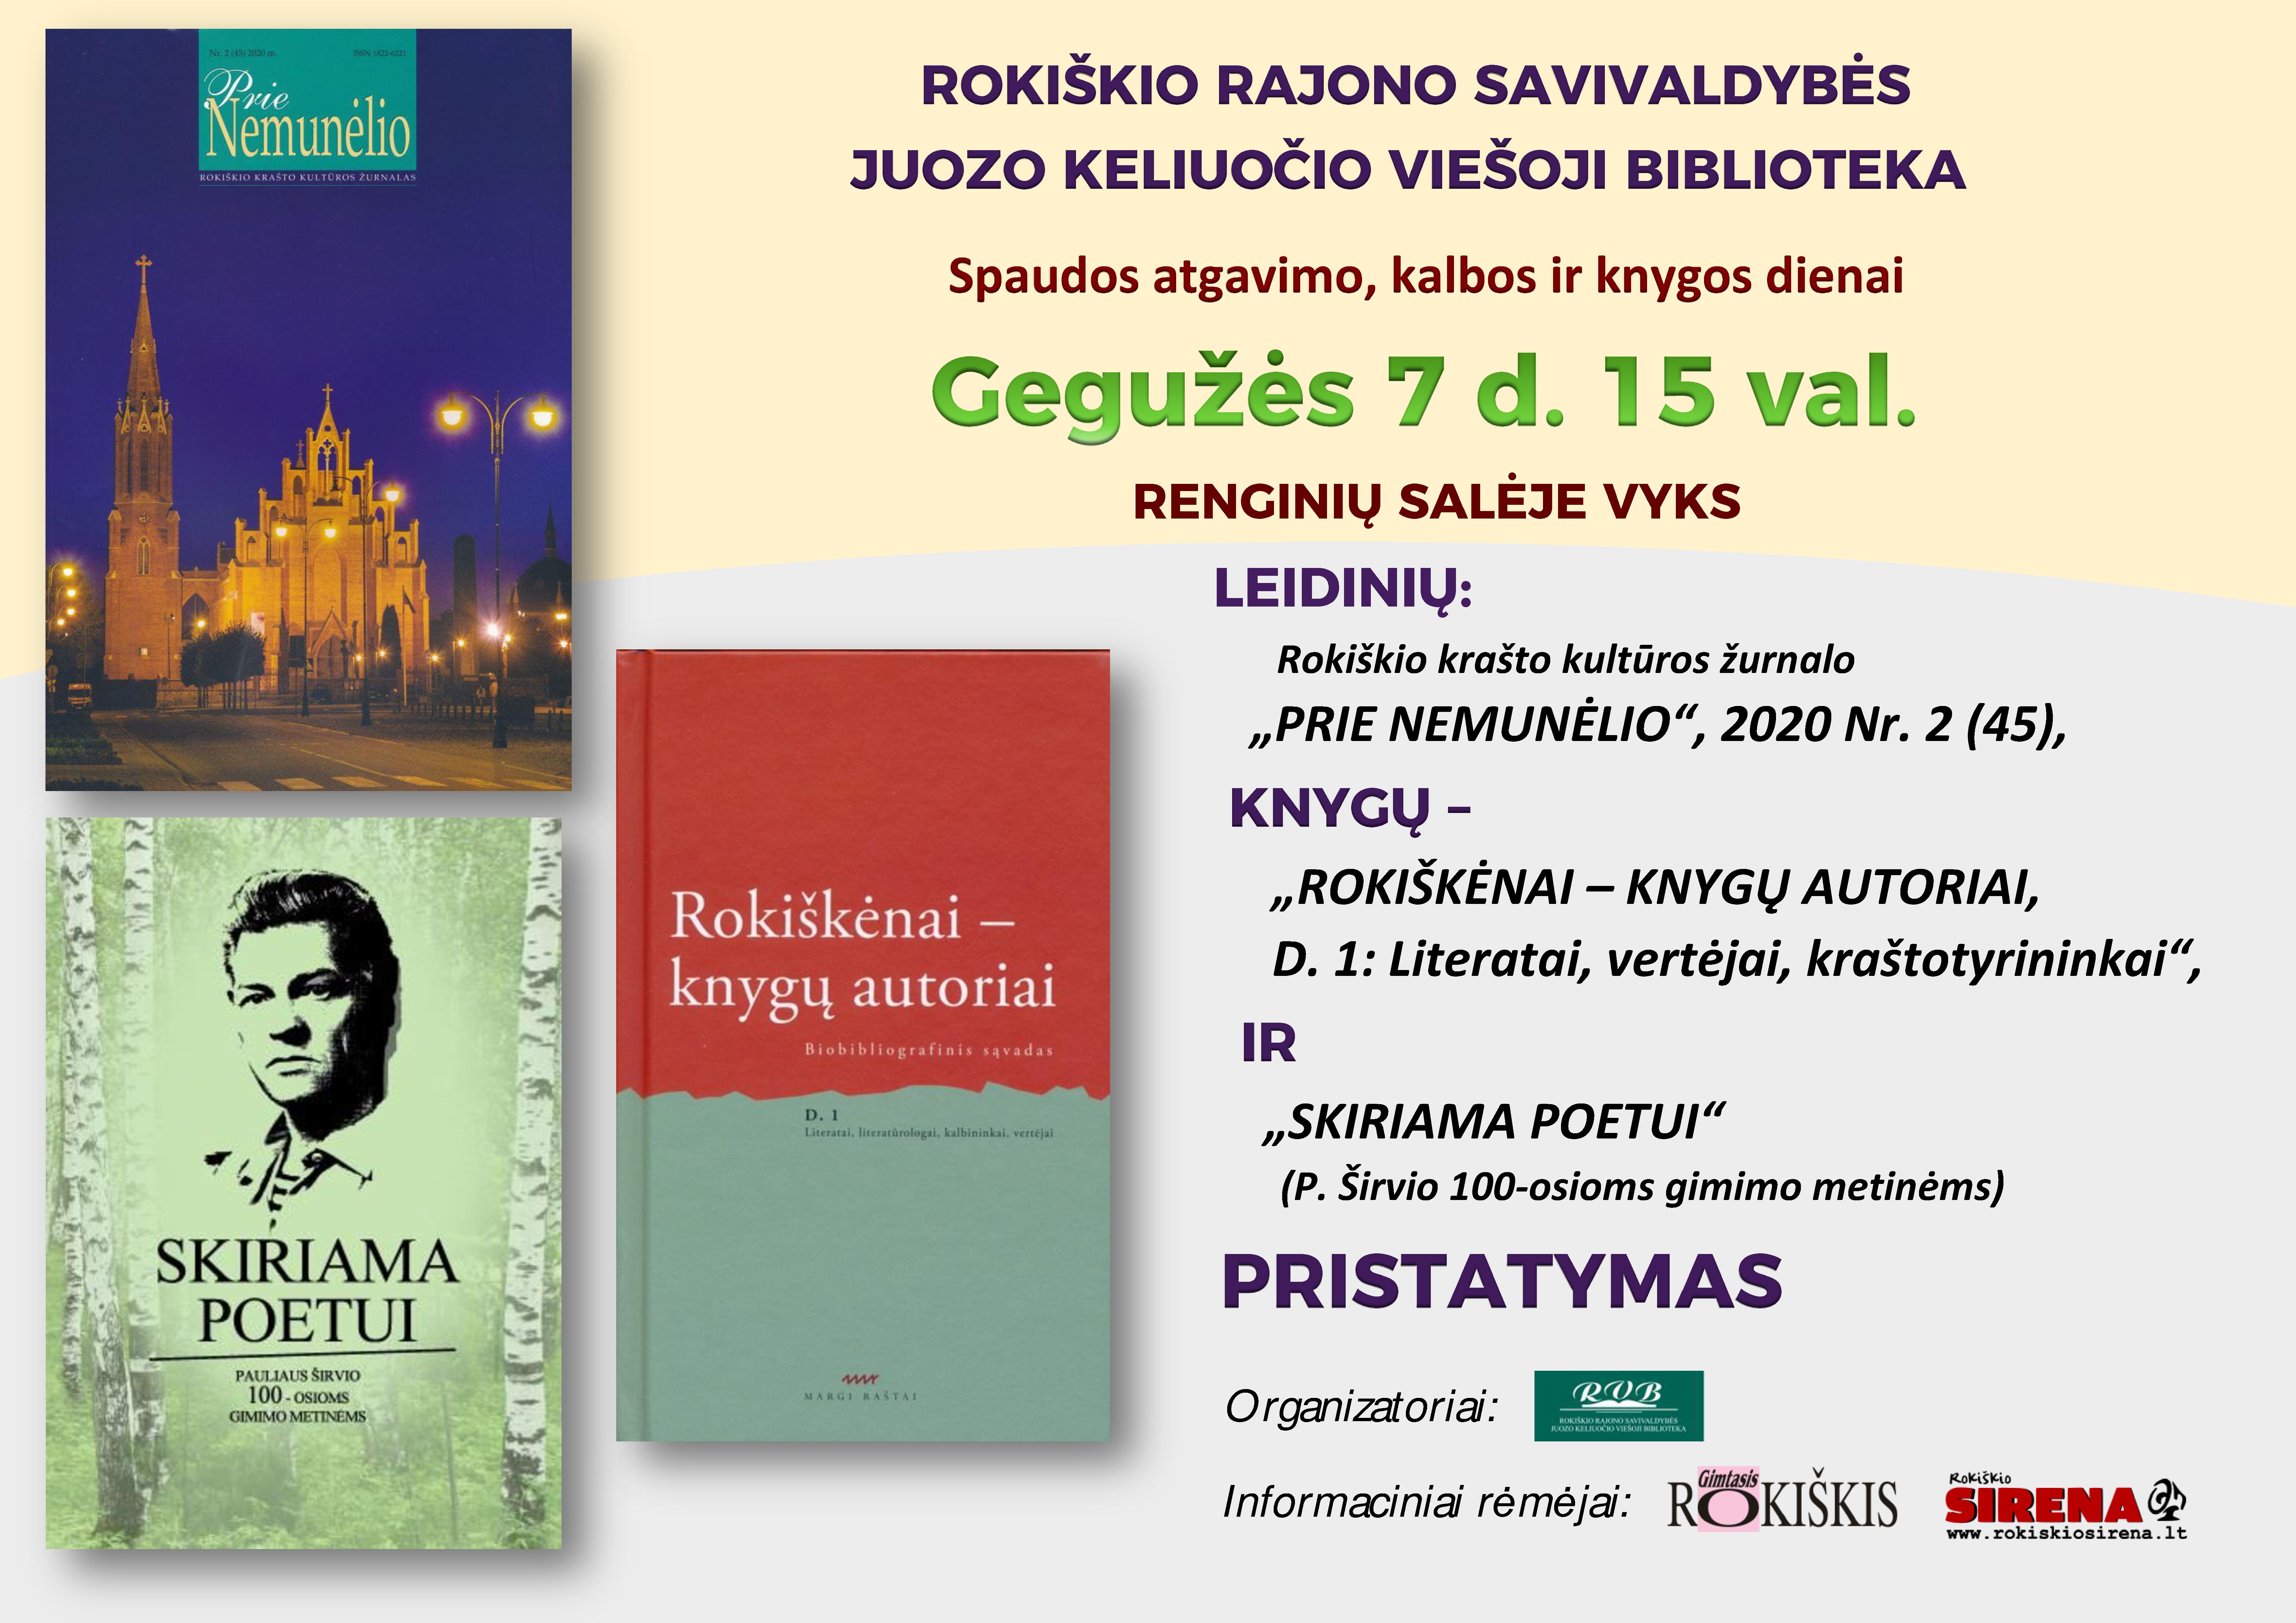 Gegužės 7-ajai – Spaudos atgavimo, kalbos ir knygos dienai – leidinių pristatymas Rokiškio J. Keliuočio viešojoje bibliotekoje.